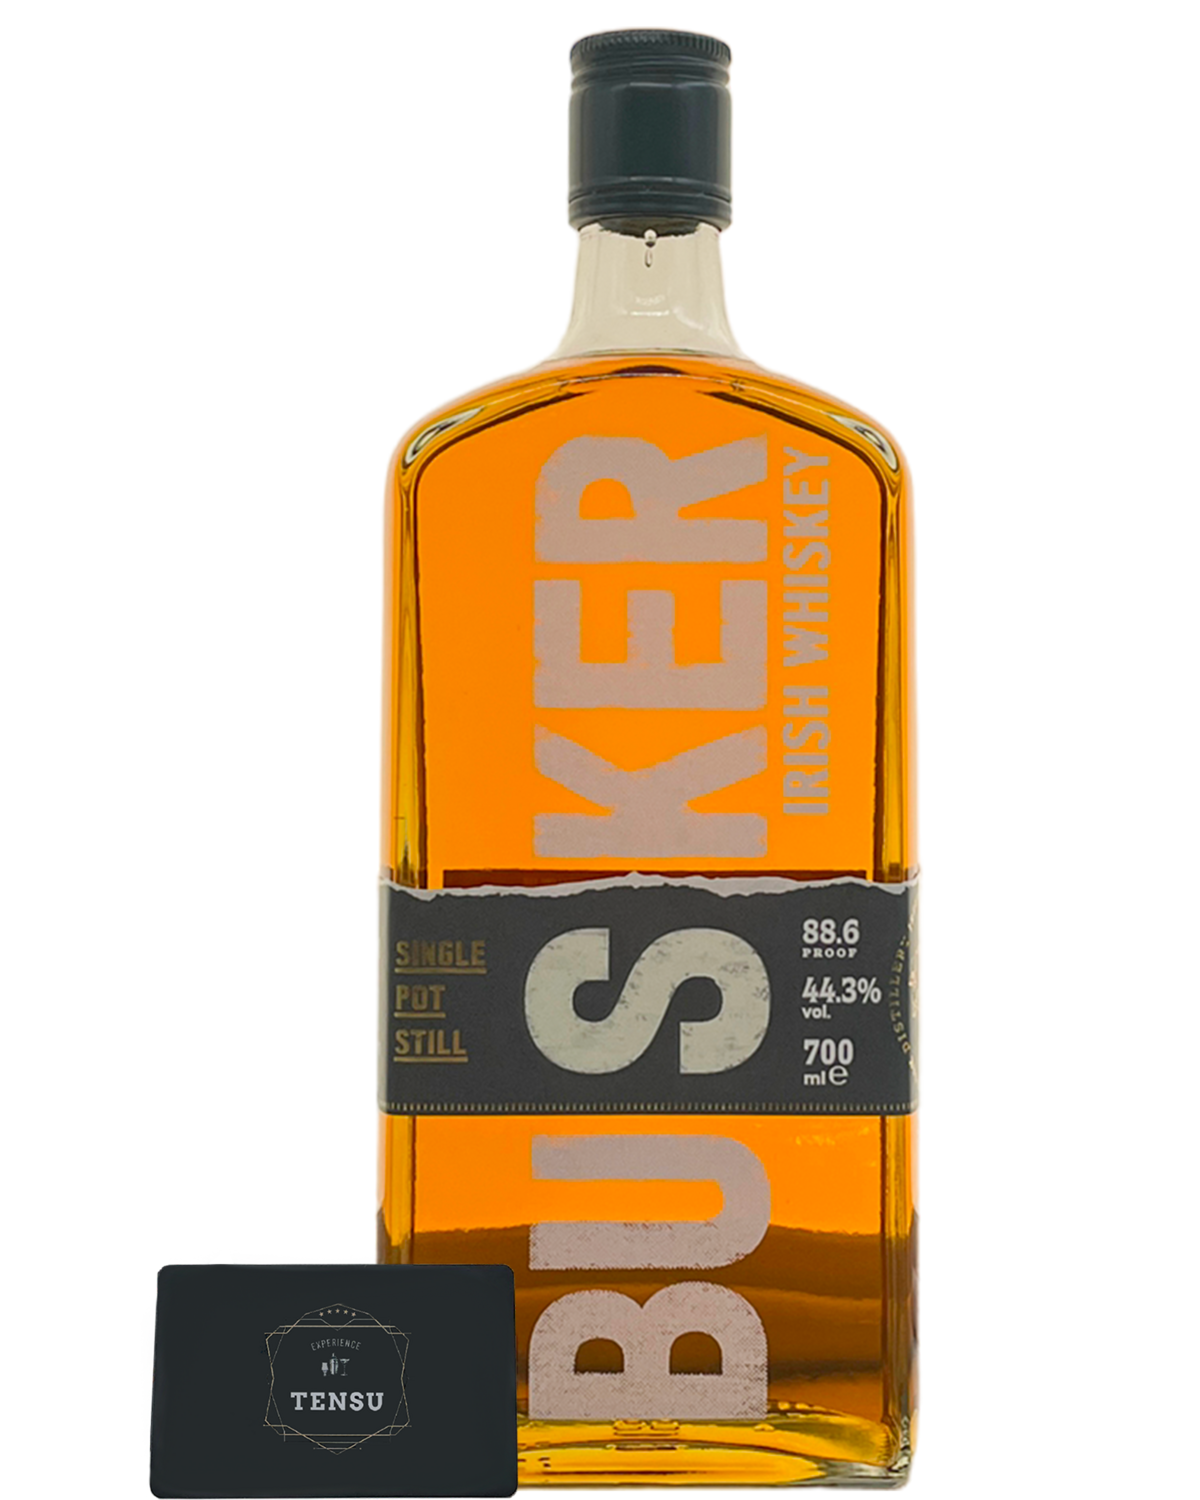 Busker Irish Whiskey -Single Pot Still- (2023) 44.3 "OB"